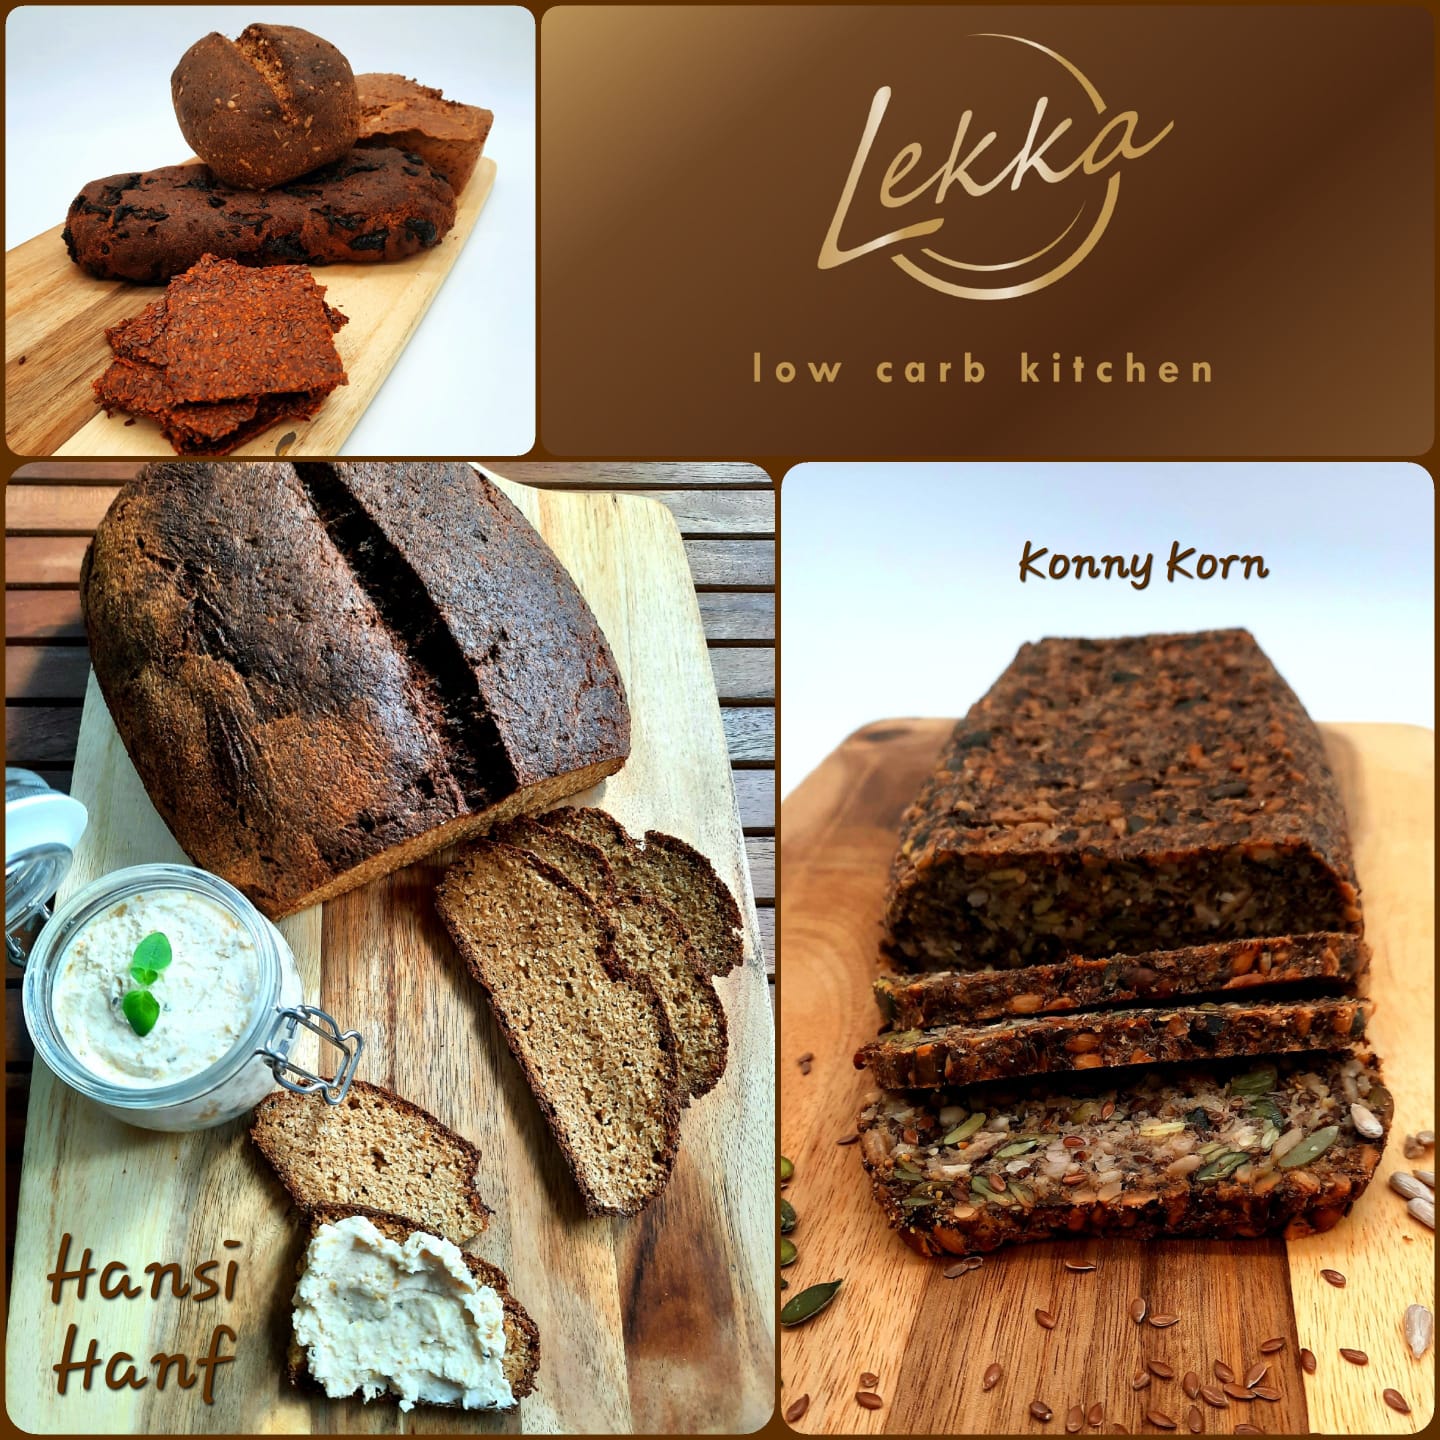 Ein zweites Bild des Unternehmens: Lekka Low Carb Kitchen in Essen